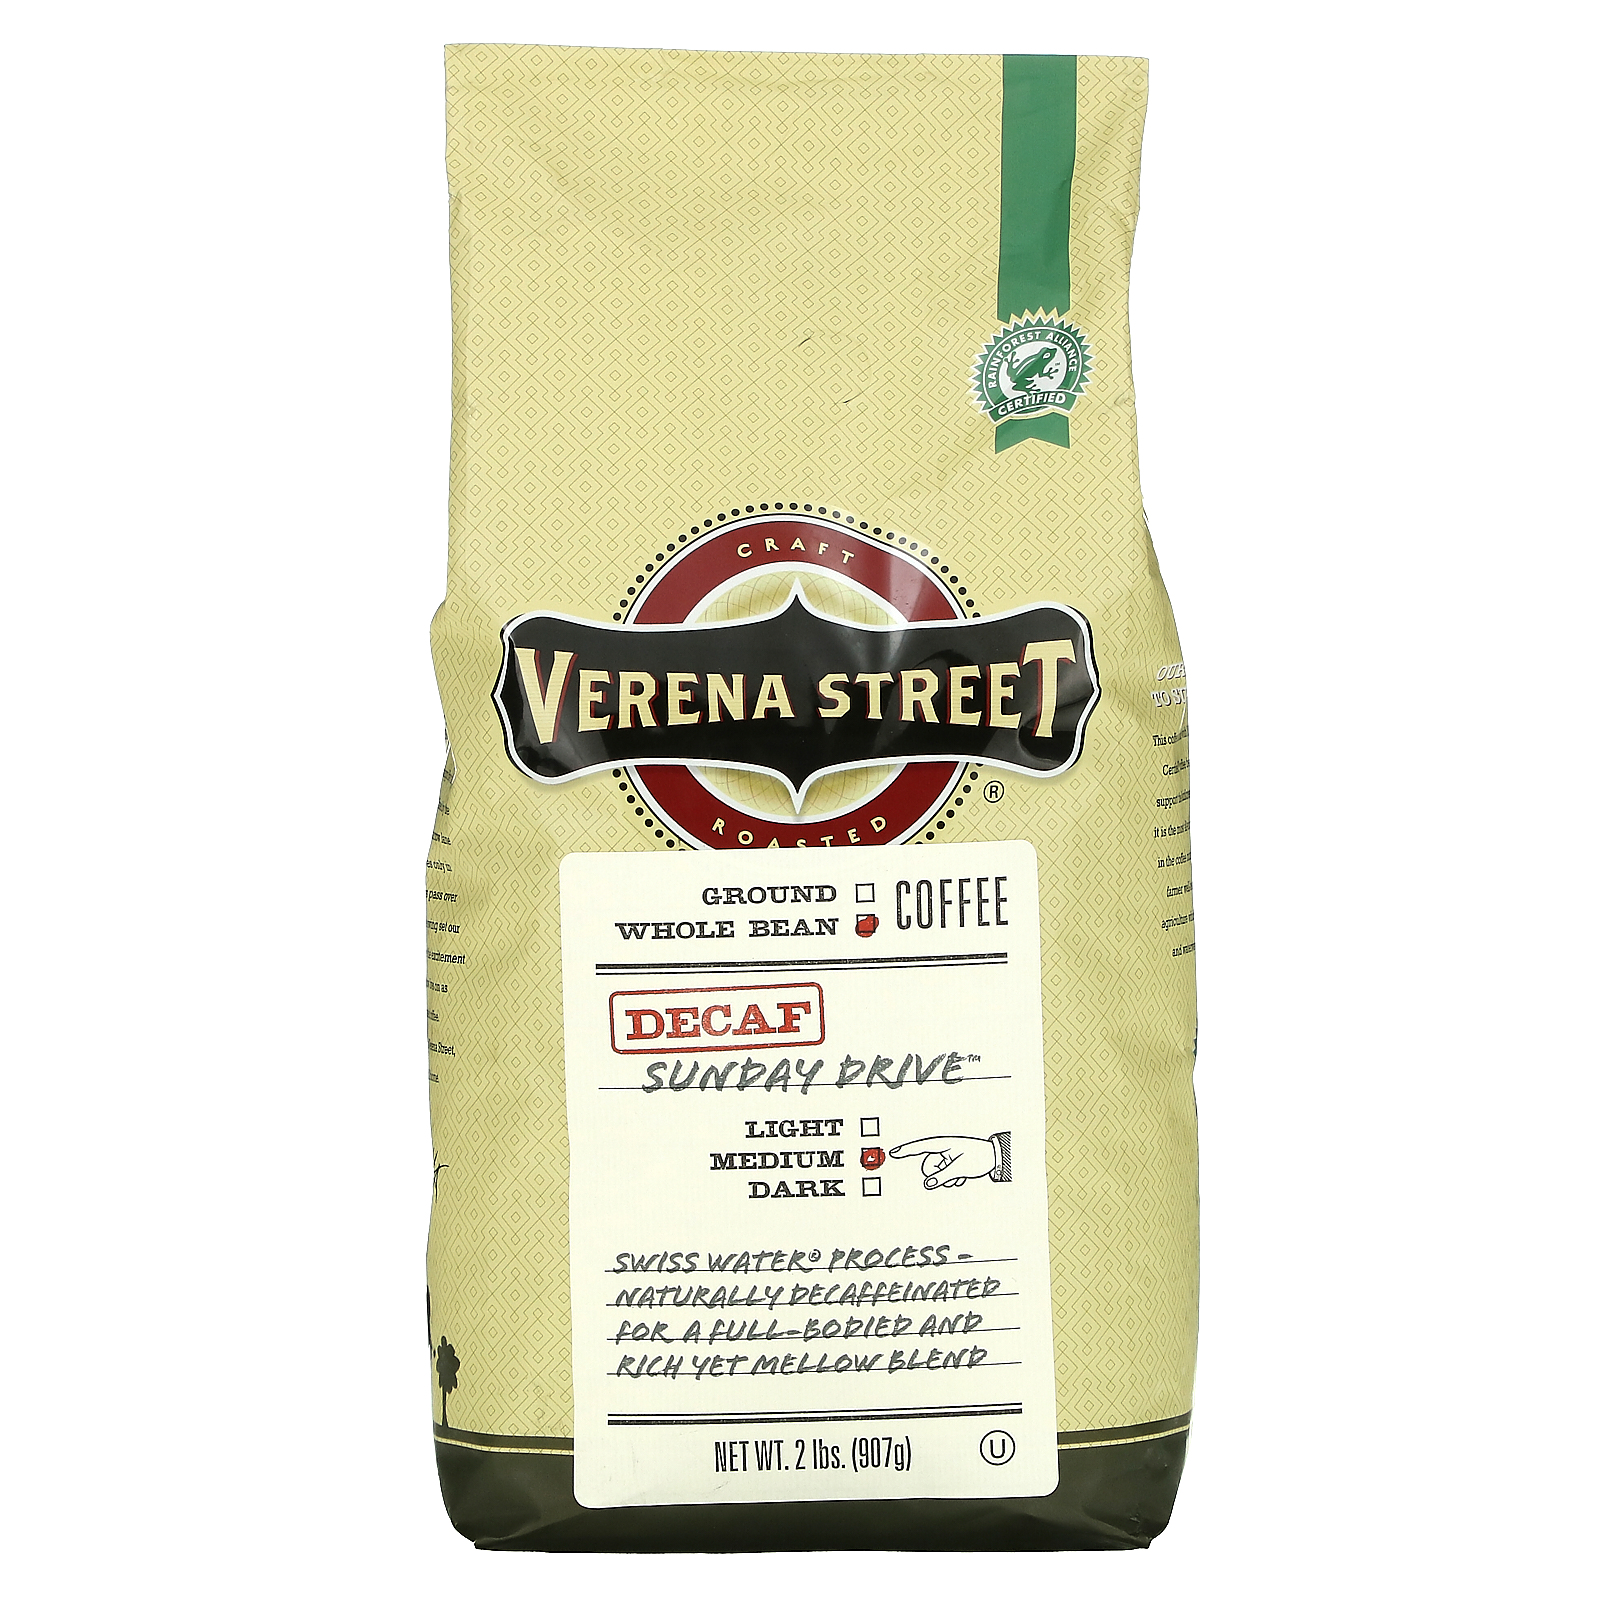 期間限定 最安値挑戦 Verena Street Sunday Drive サンデードライブ ミディアムロースト 907g 売れ筋がひ！ カフェインレス コーヒー豆 2ポンド